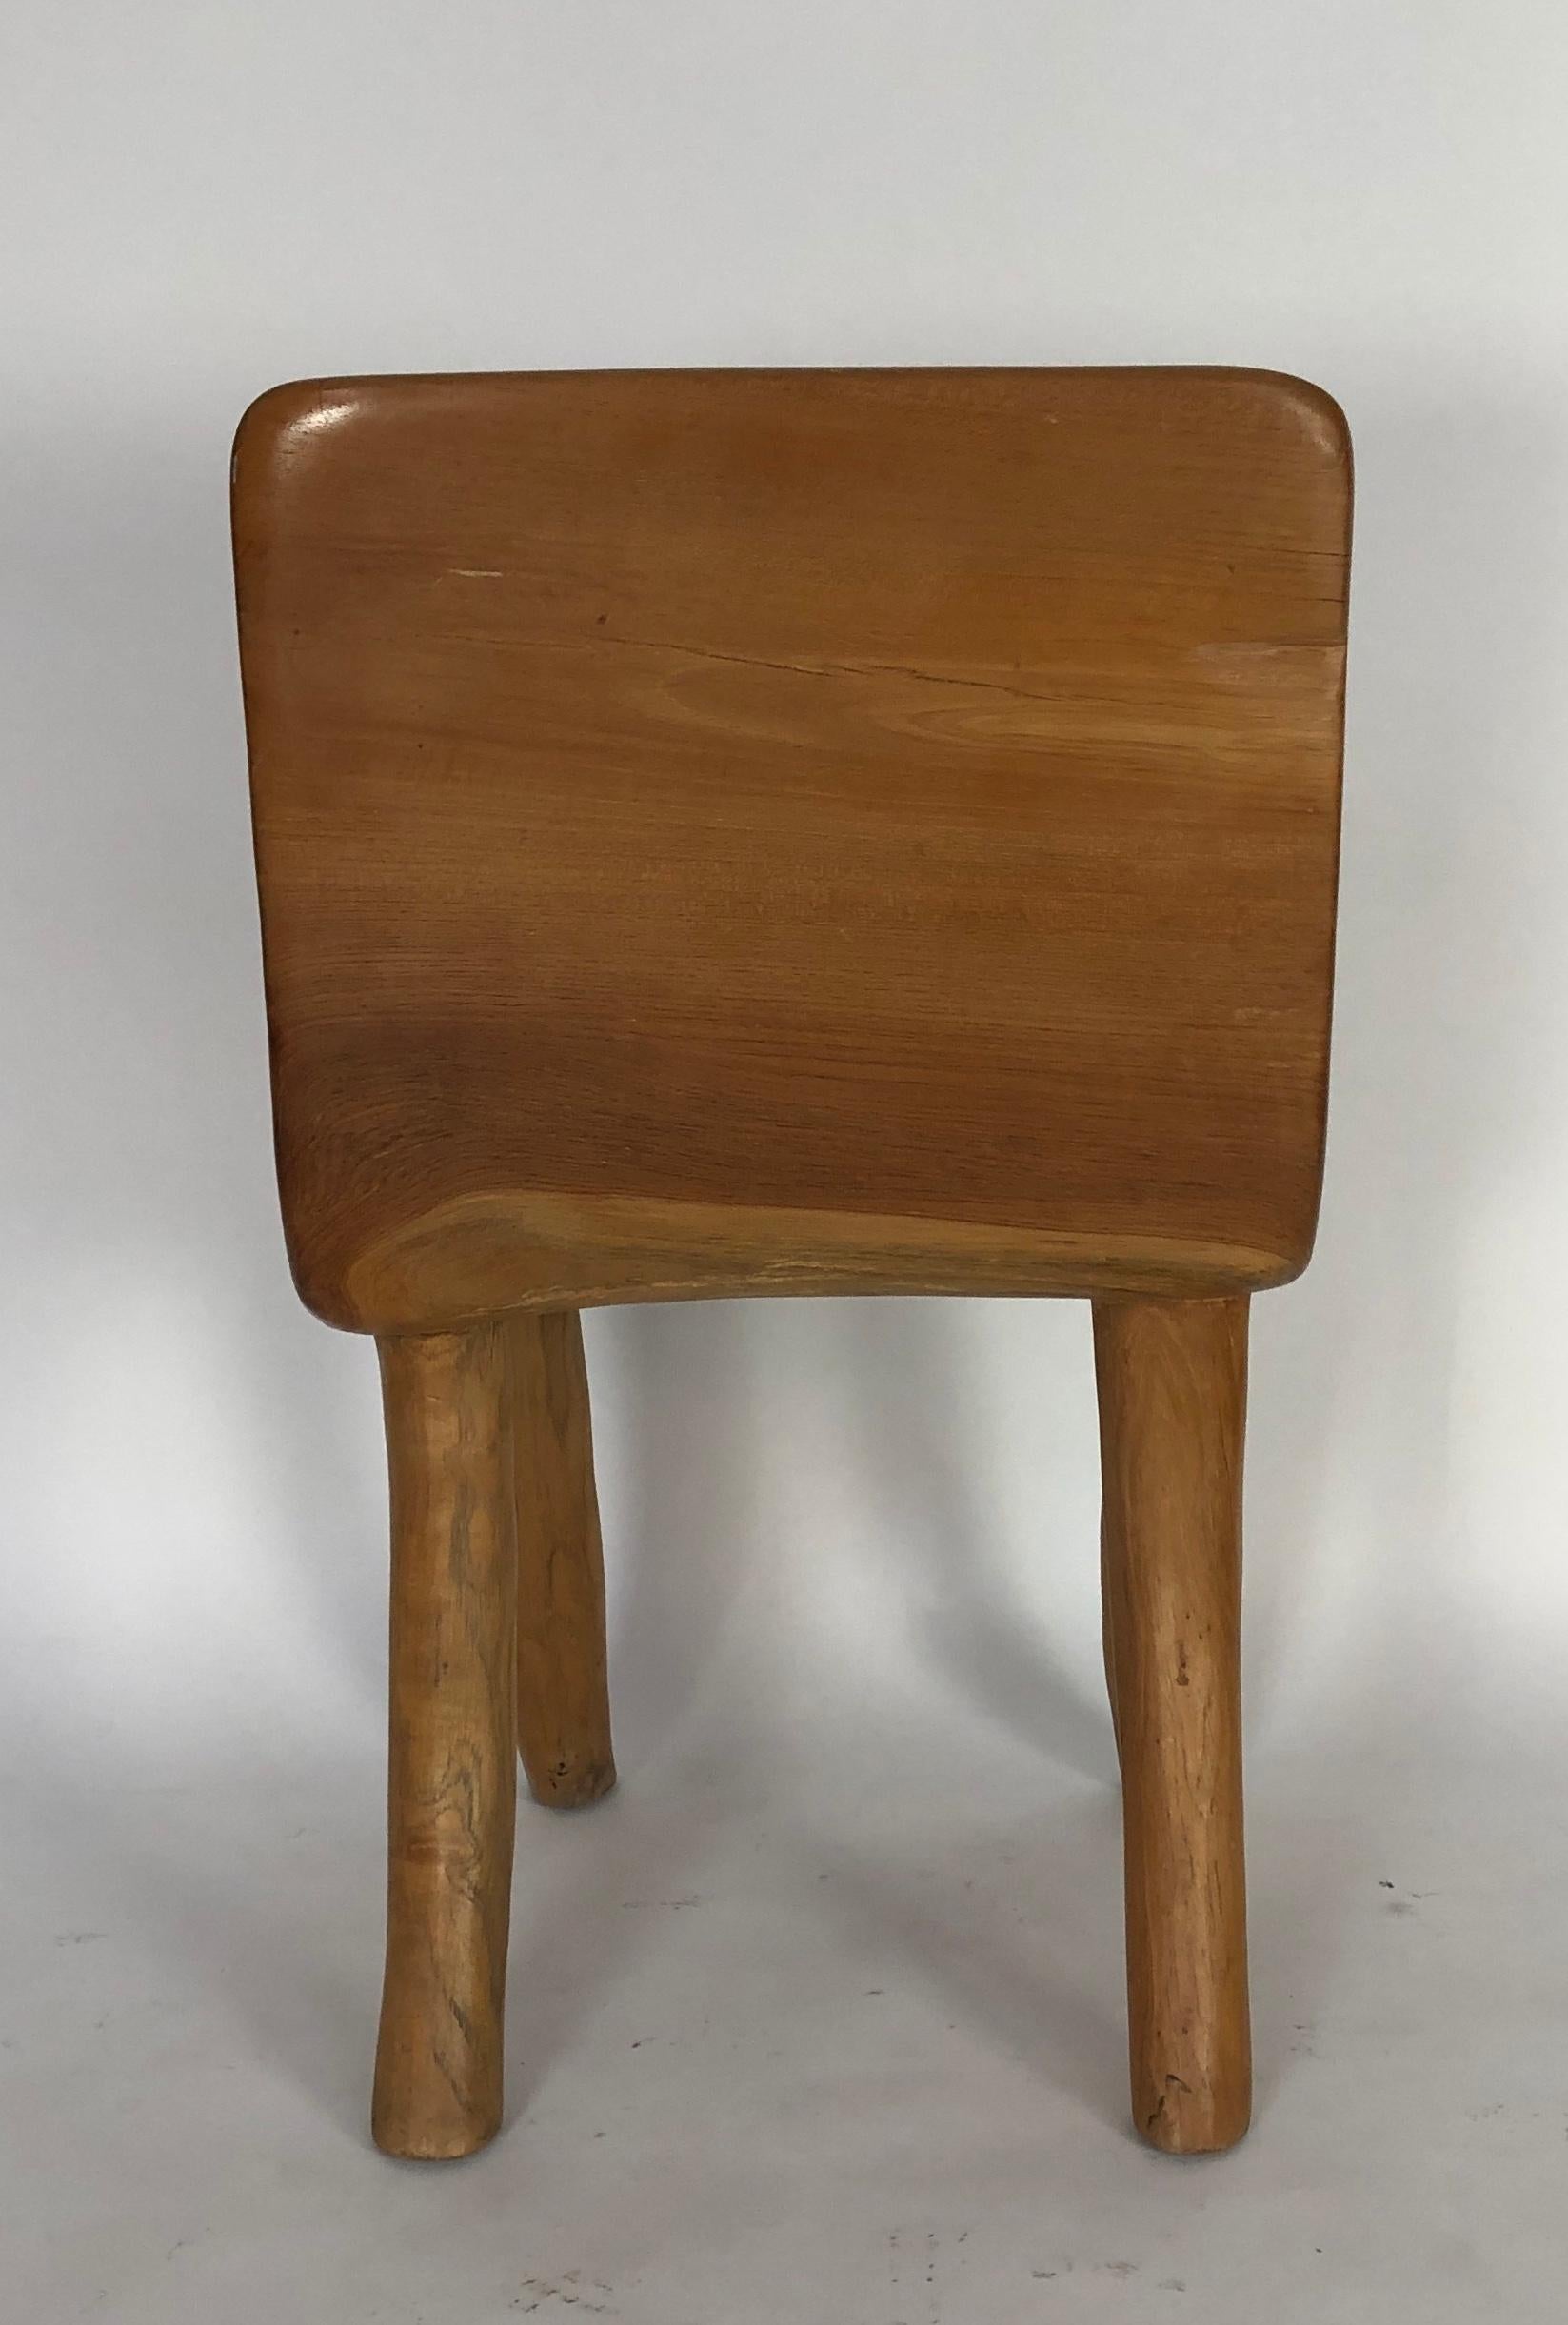 Unique Carved Teak Chair #2 1